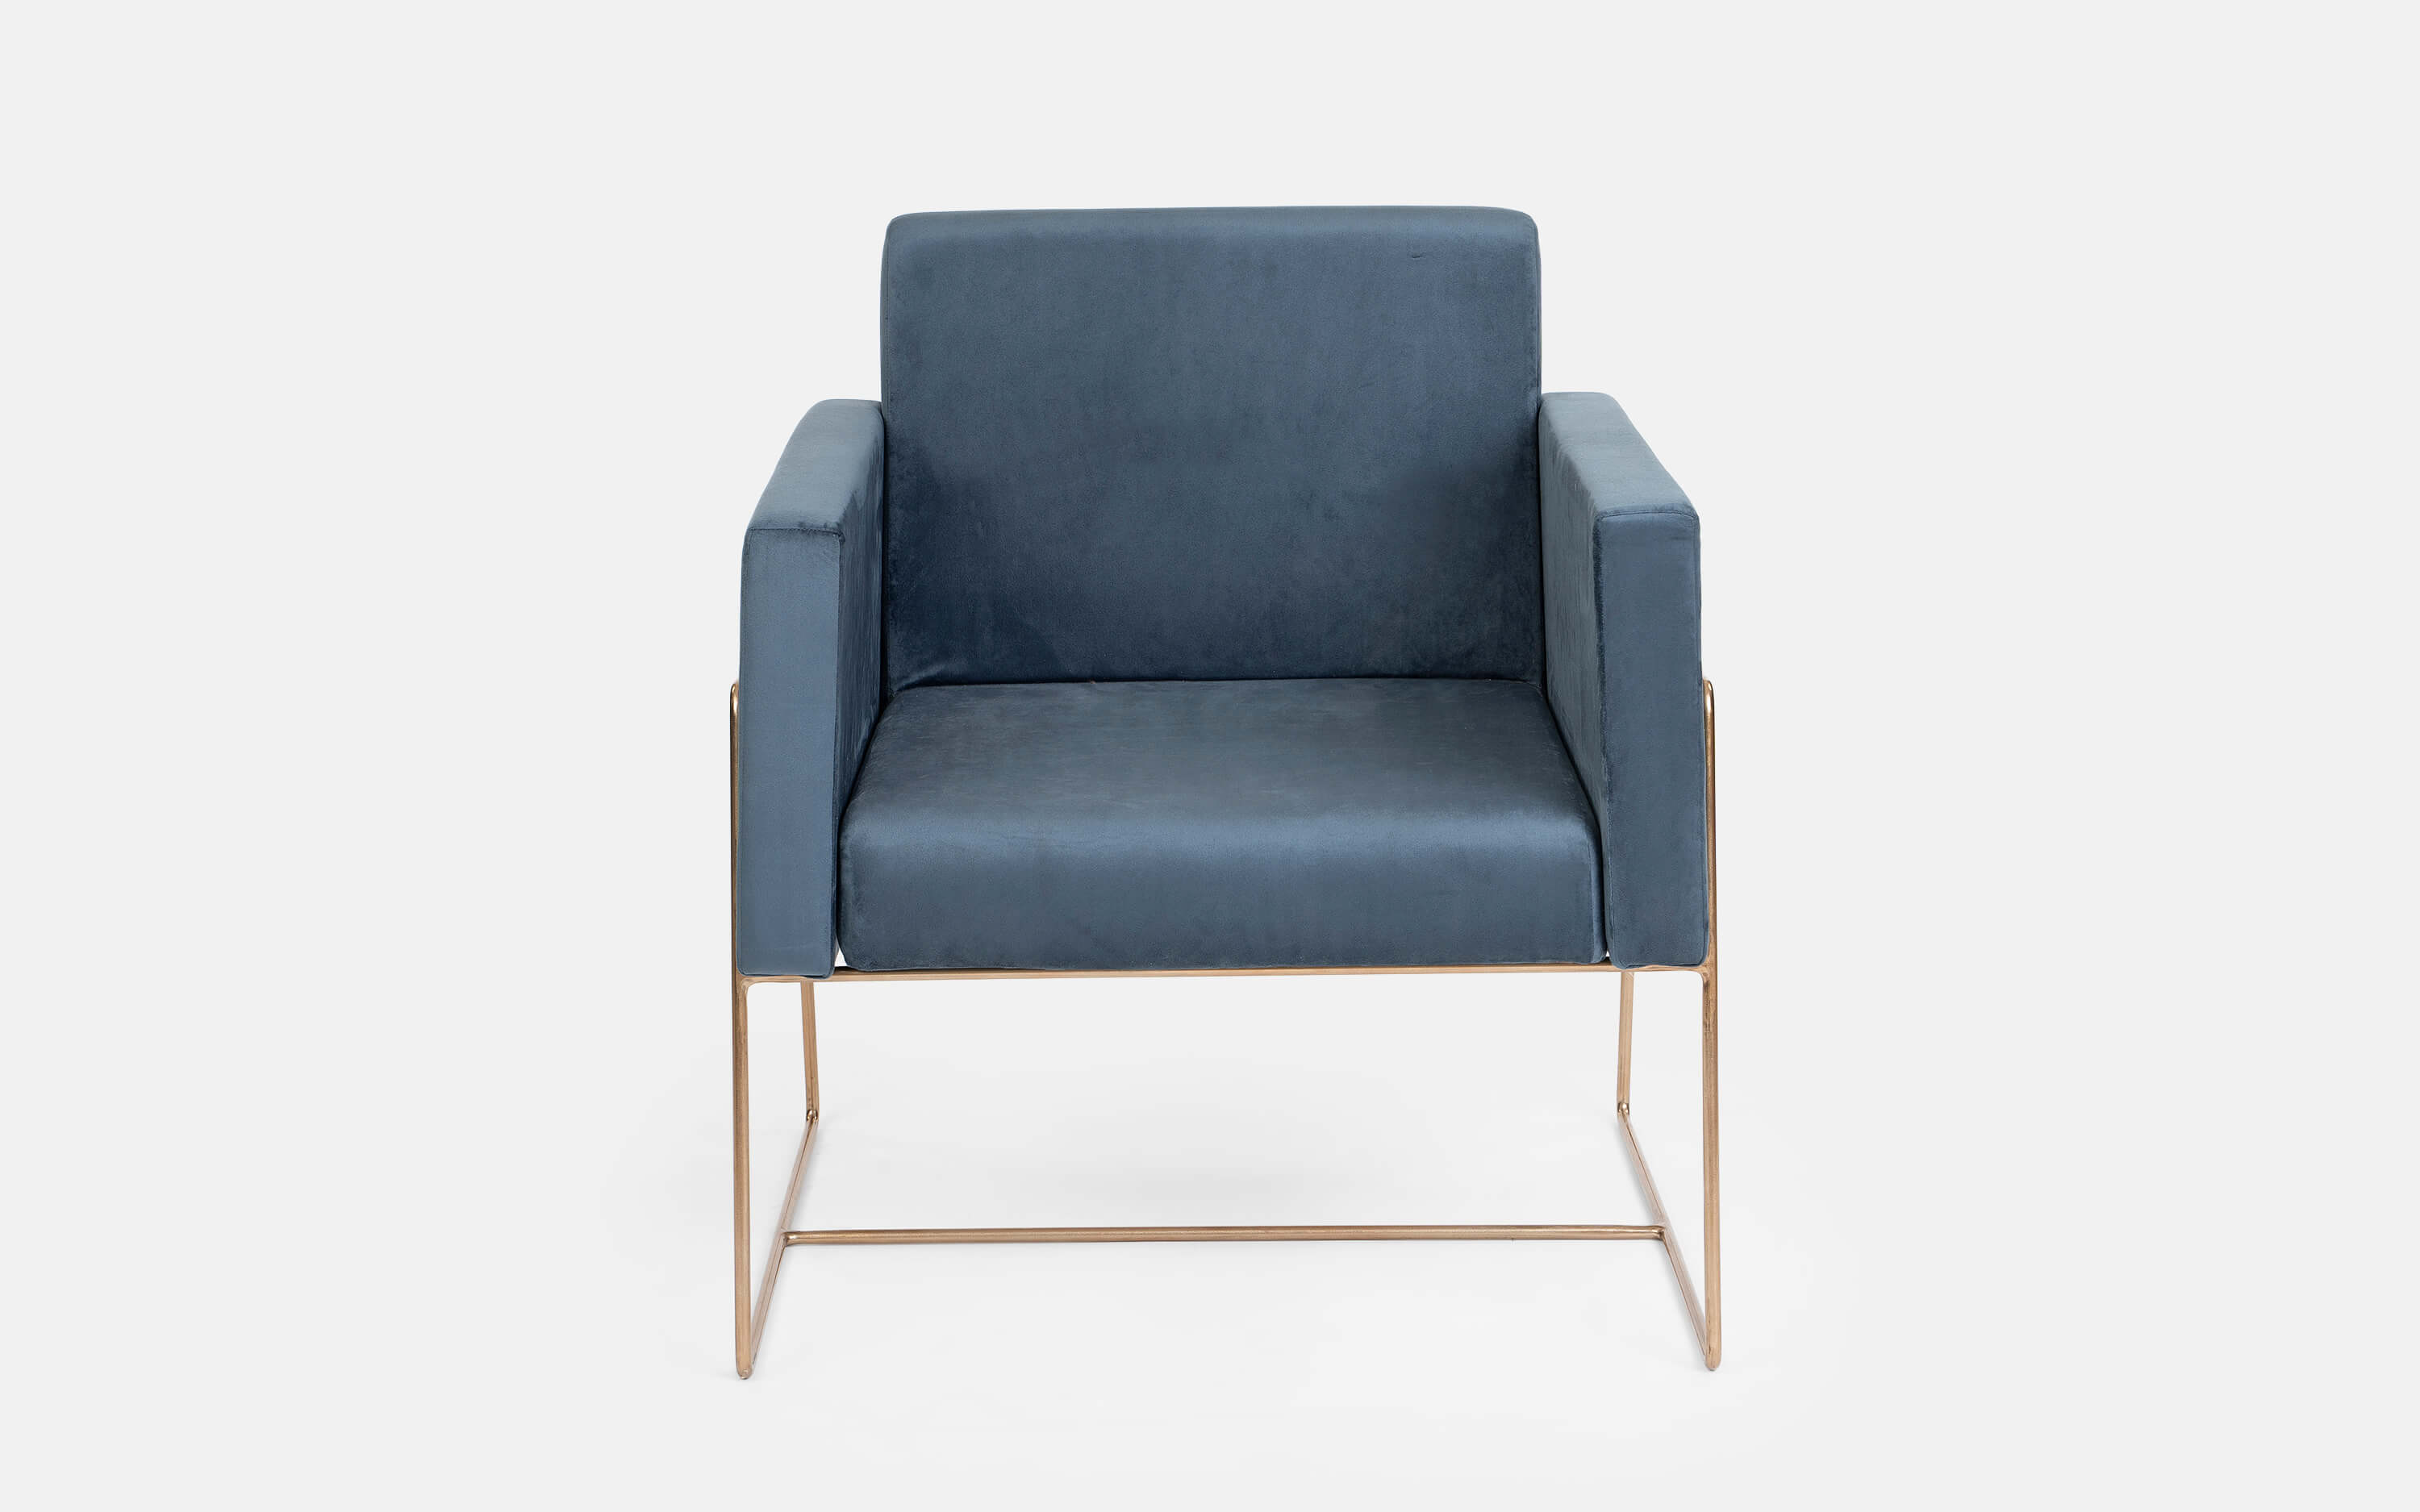 Jade Blue Color Lounge Chair for Bedroom - Orange Tree Home Pvt. Ltd.